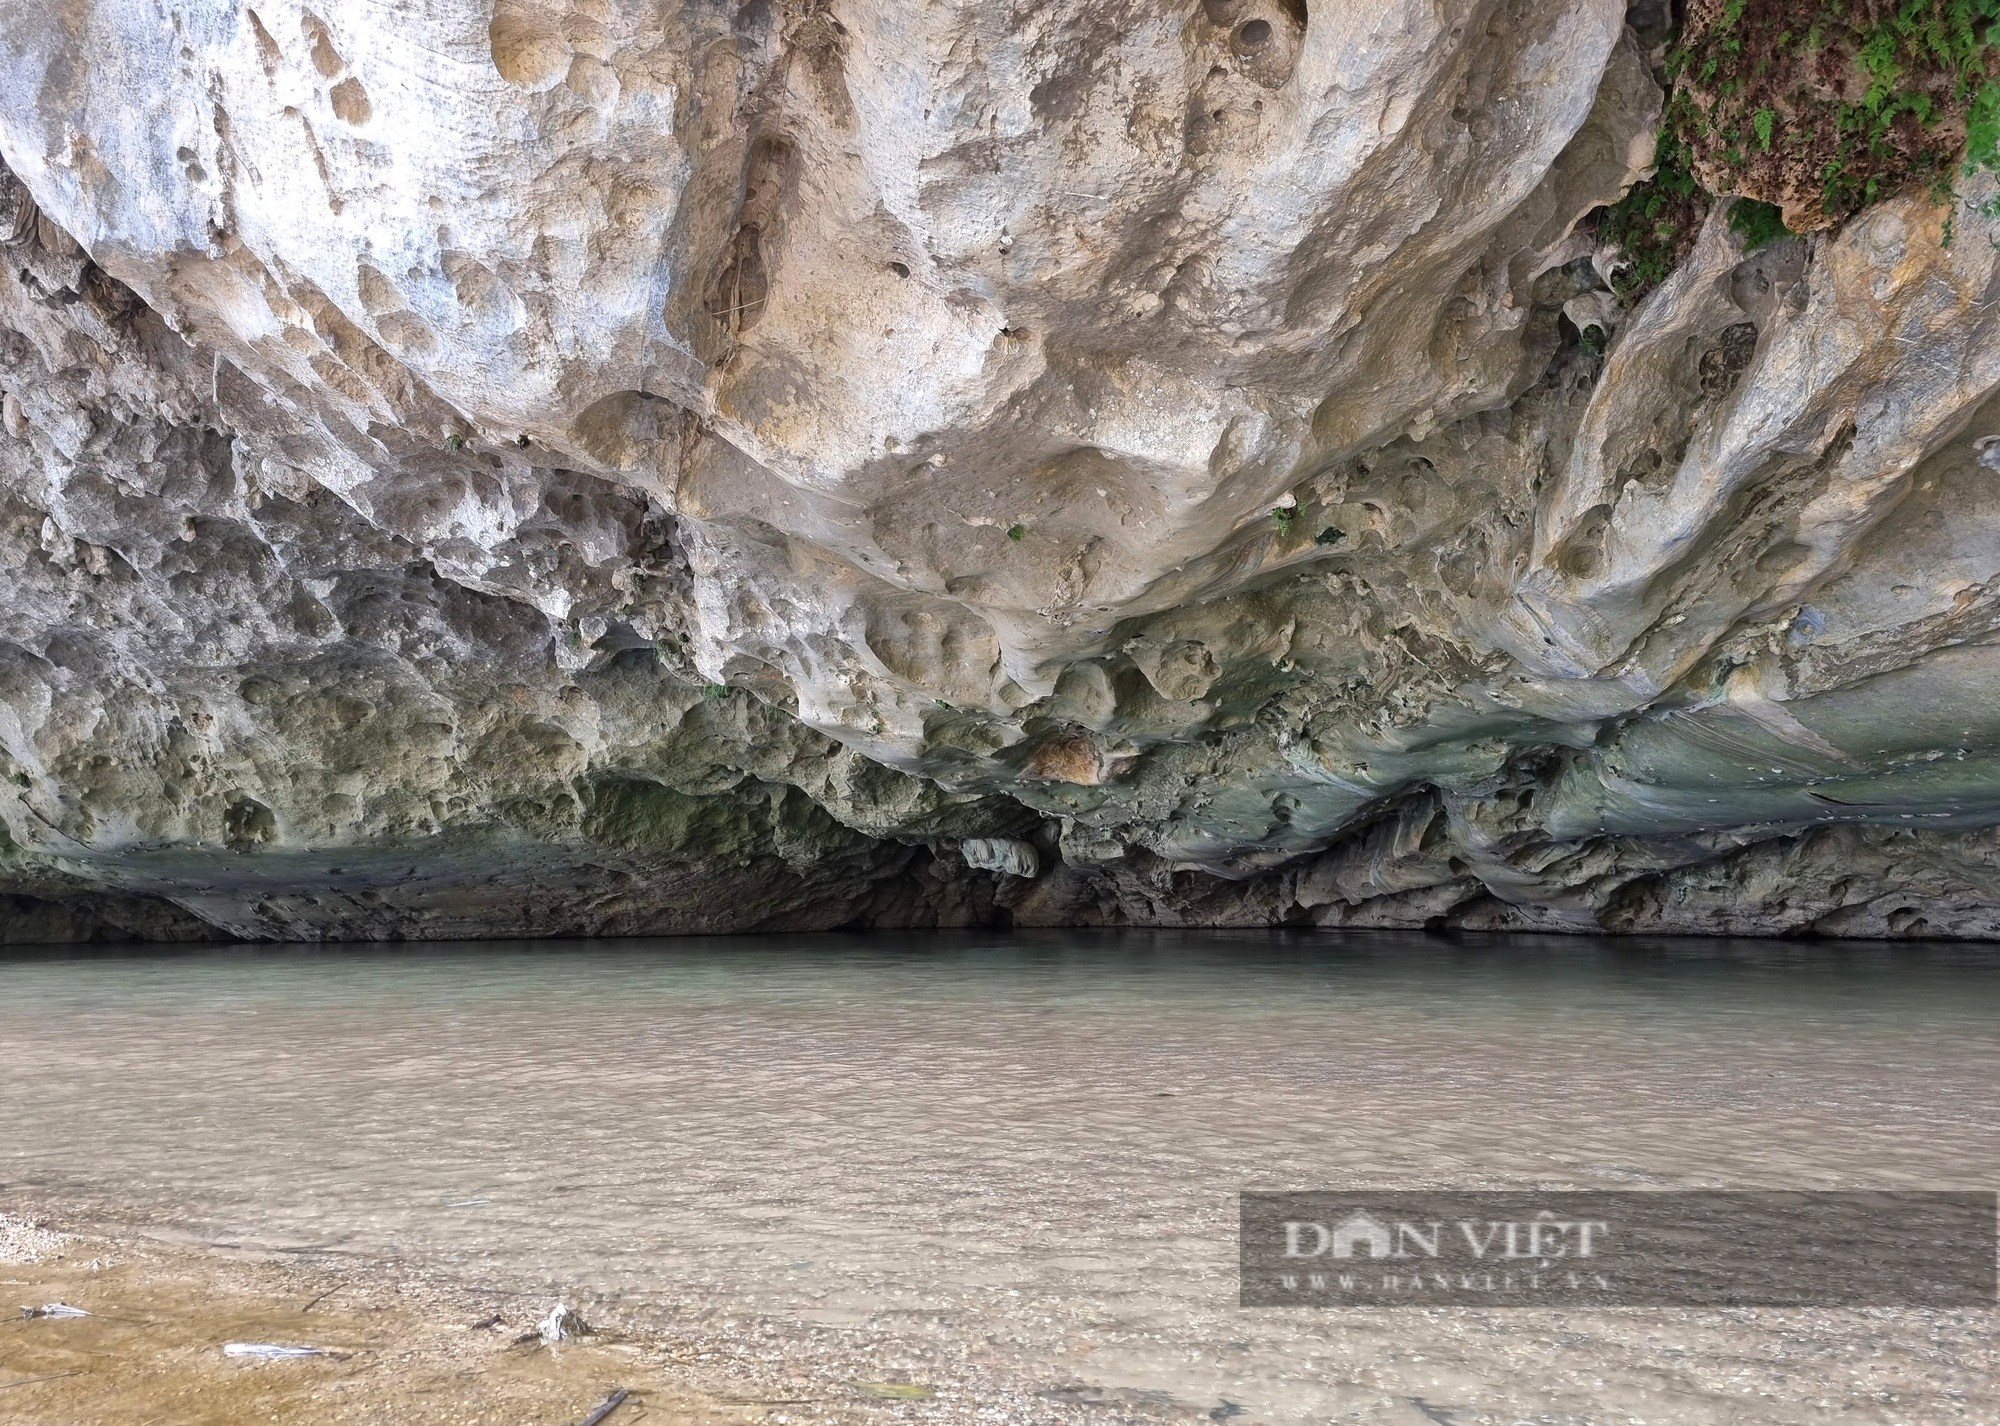 Kỳ bí hang đá chứa hơn 100 cỗ quan tài trên vách núi ở Thanh Hóa - Ảnh 3.